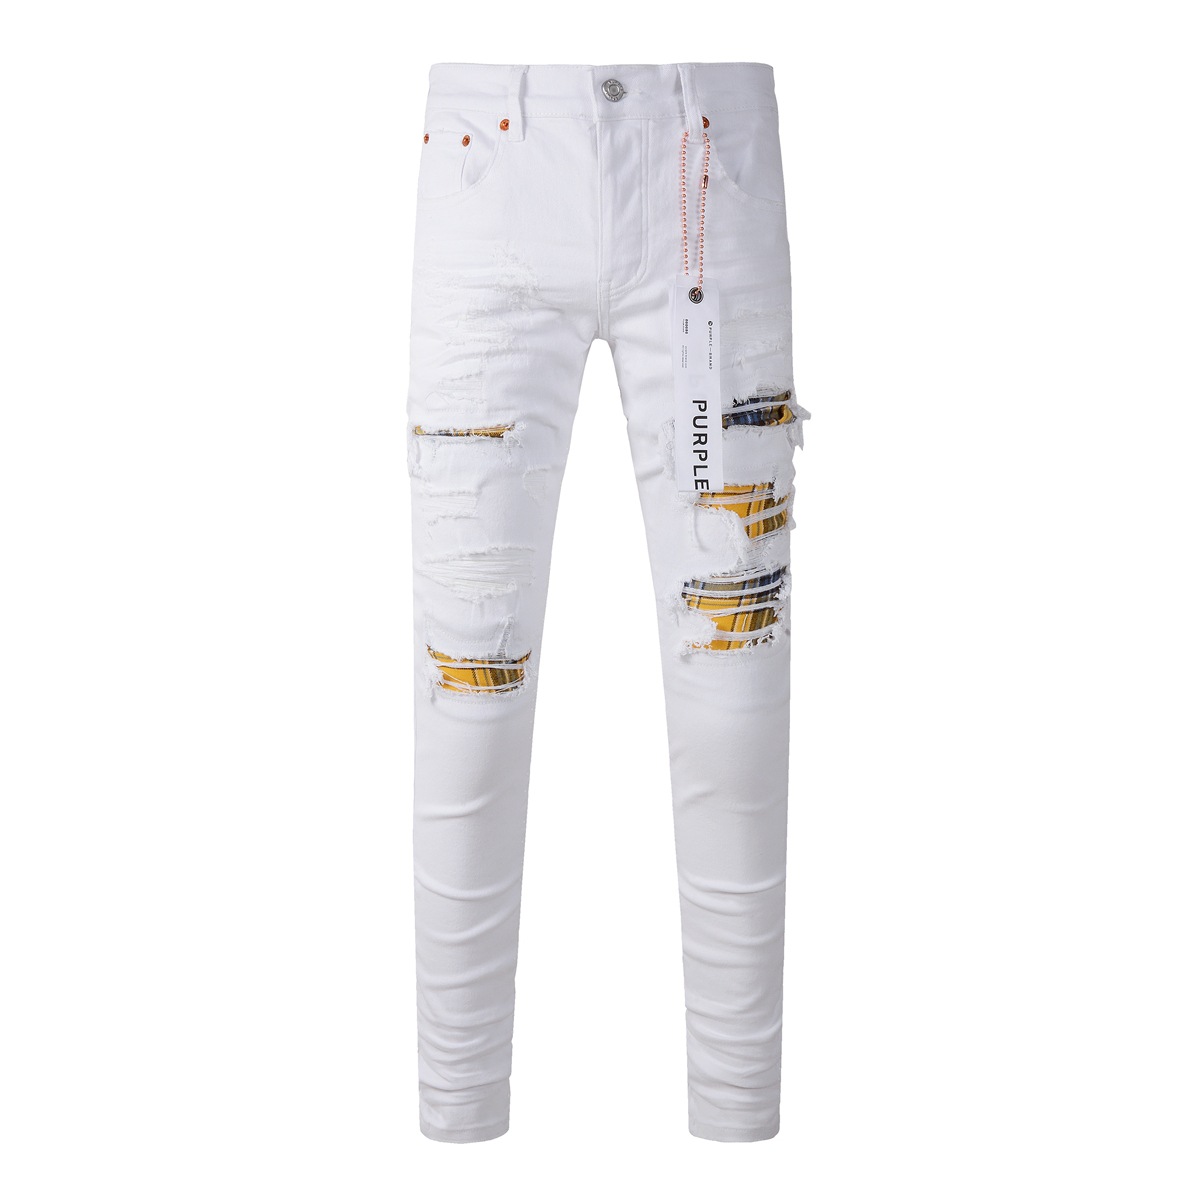 Purple marka dżinsy męskie White Street Białe spodnie Patched Hole Modna Moda dżinsowe spodnie Trend dżinsy